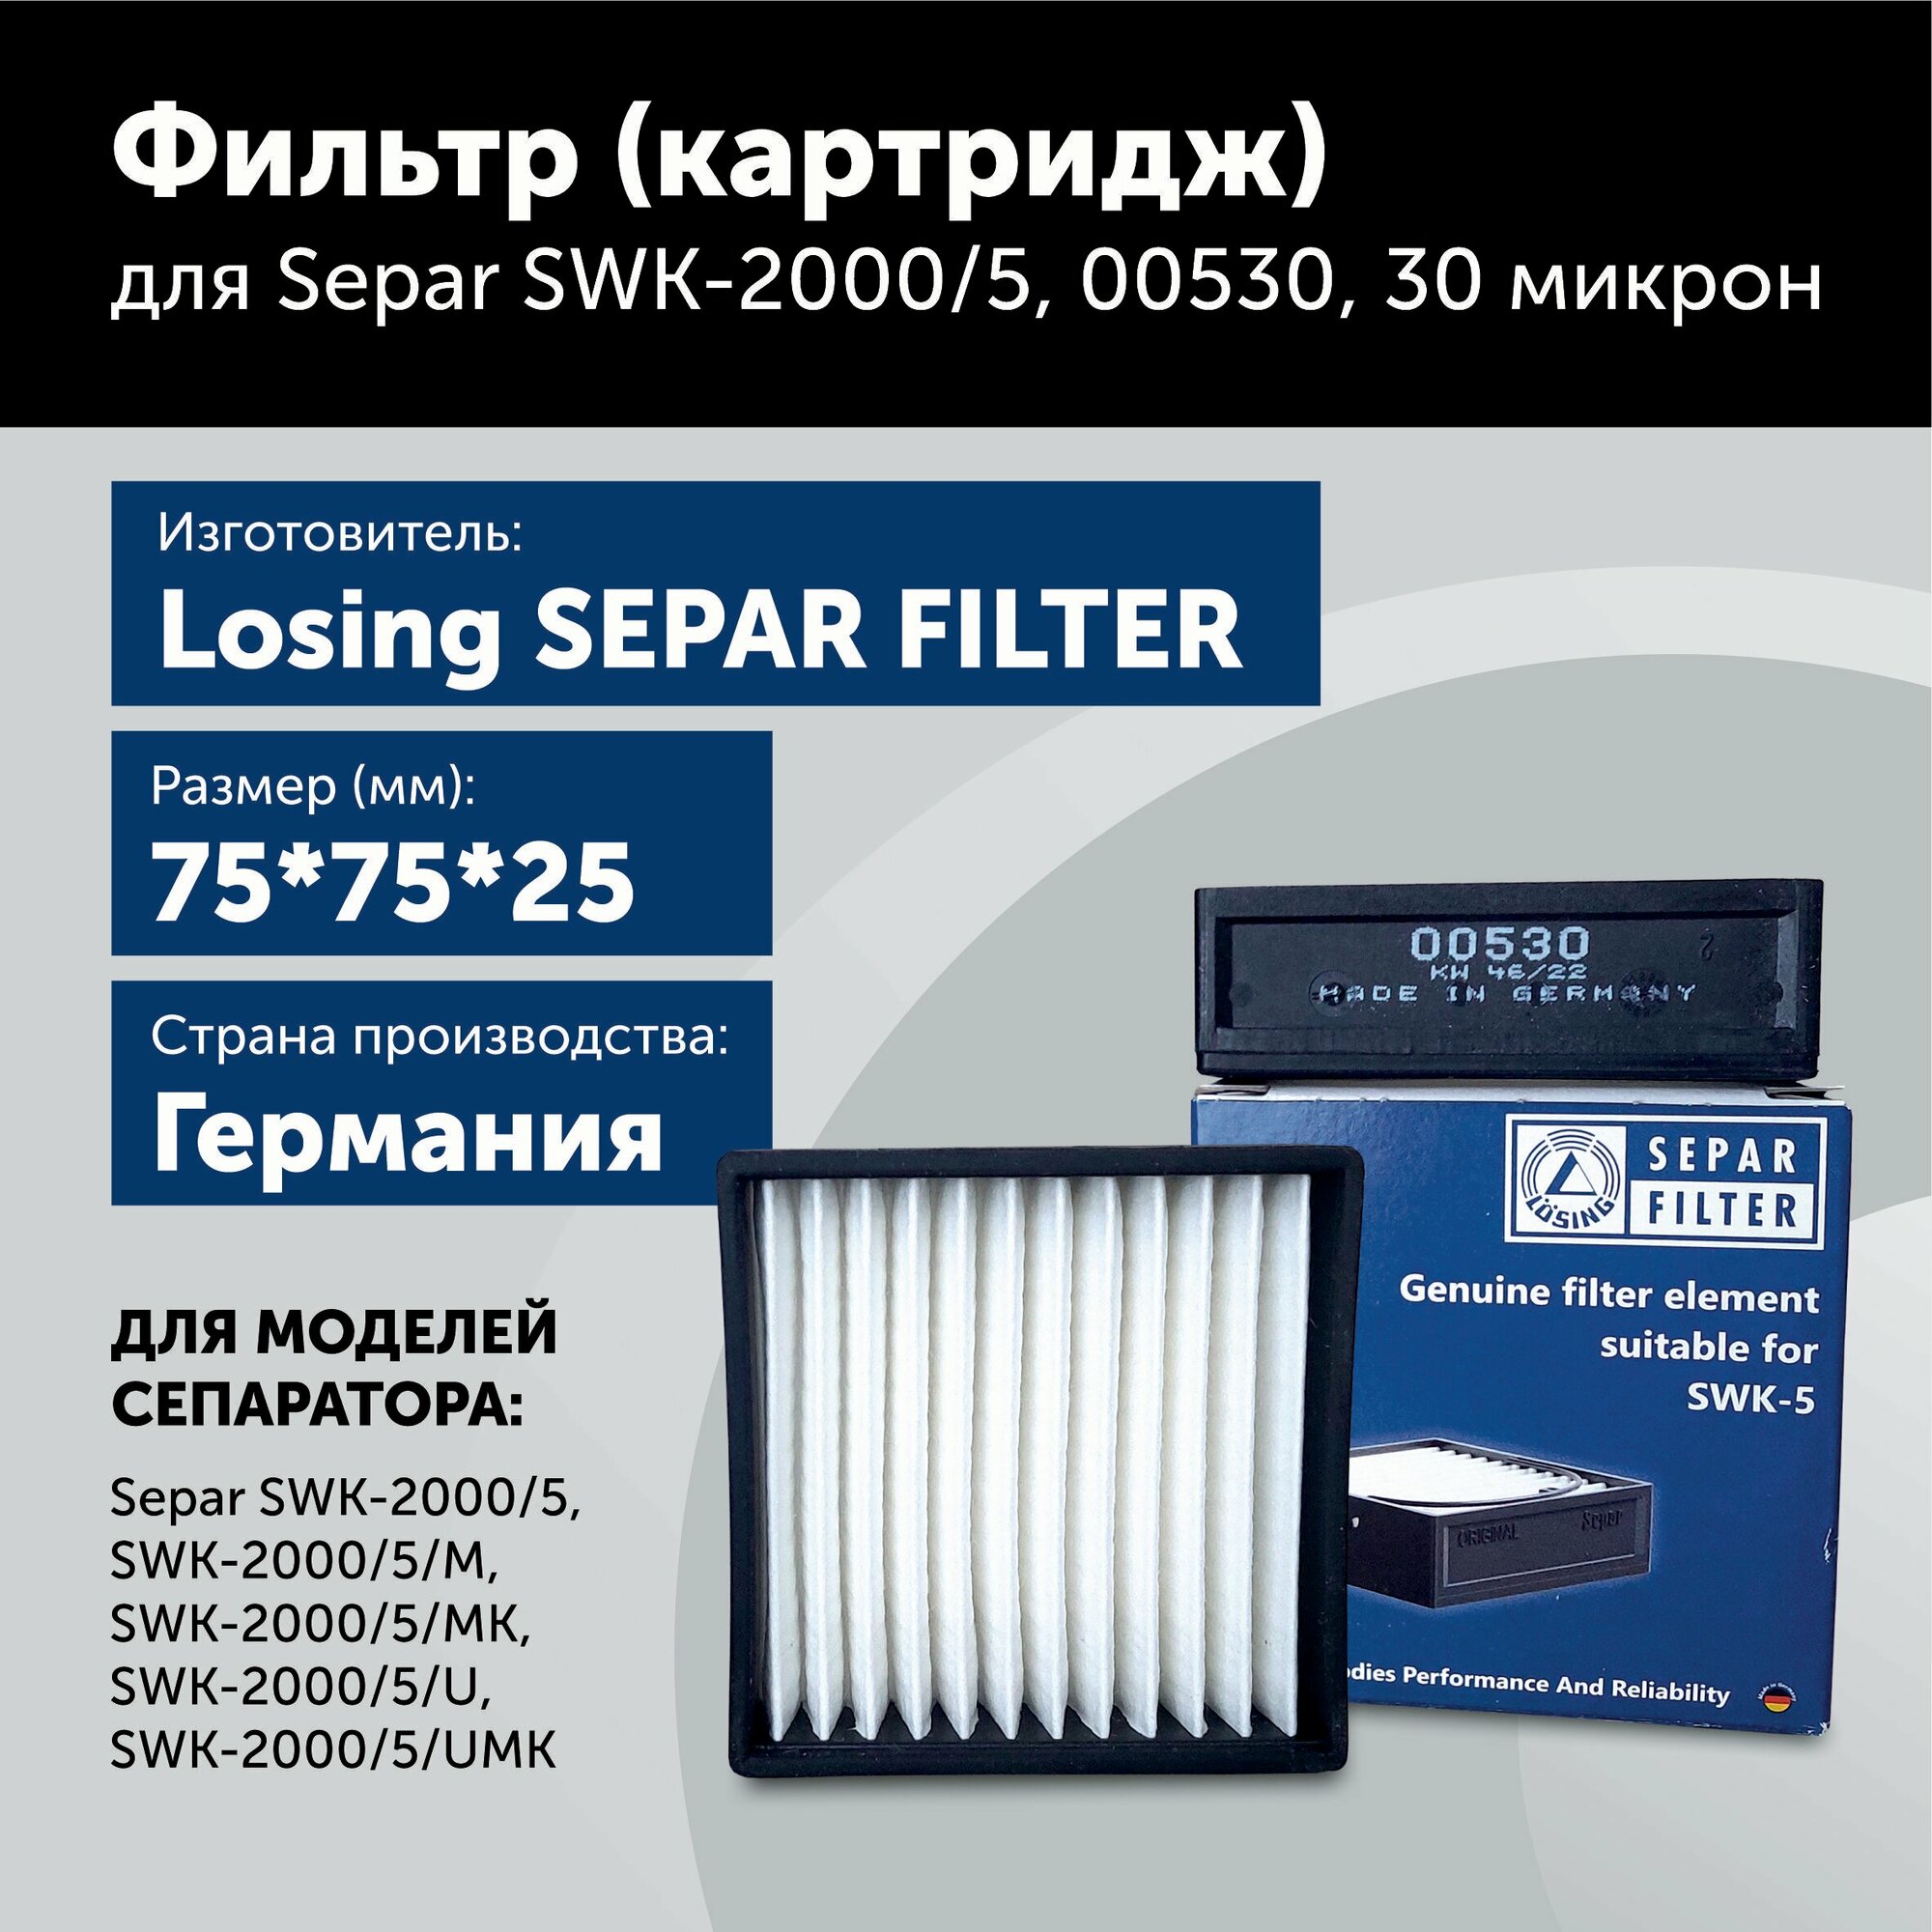 Фильтрующий элемент (картридж) для Separ SWK-2000/5, 00530, 30 микрон